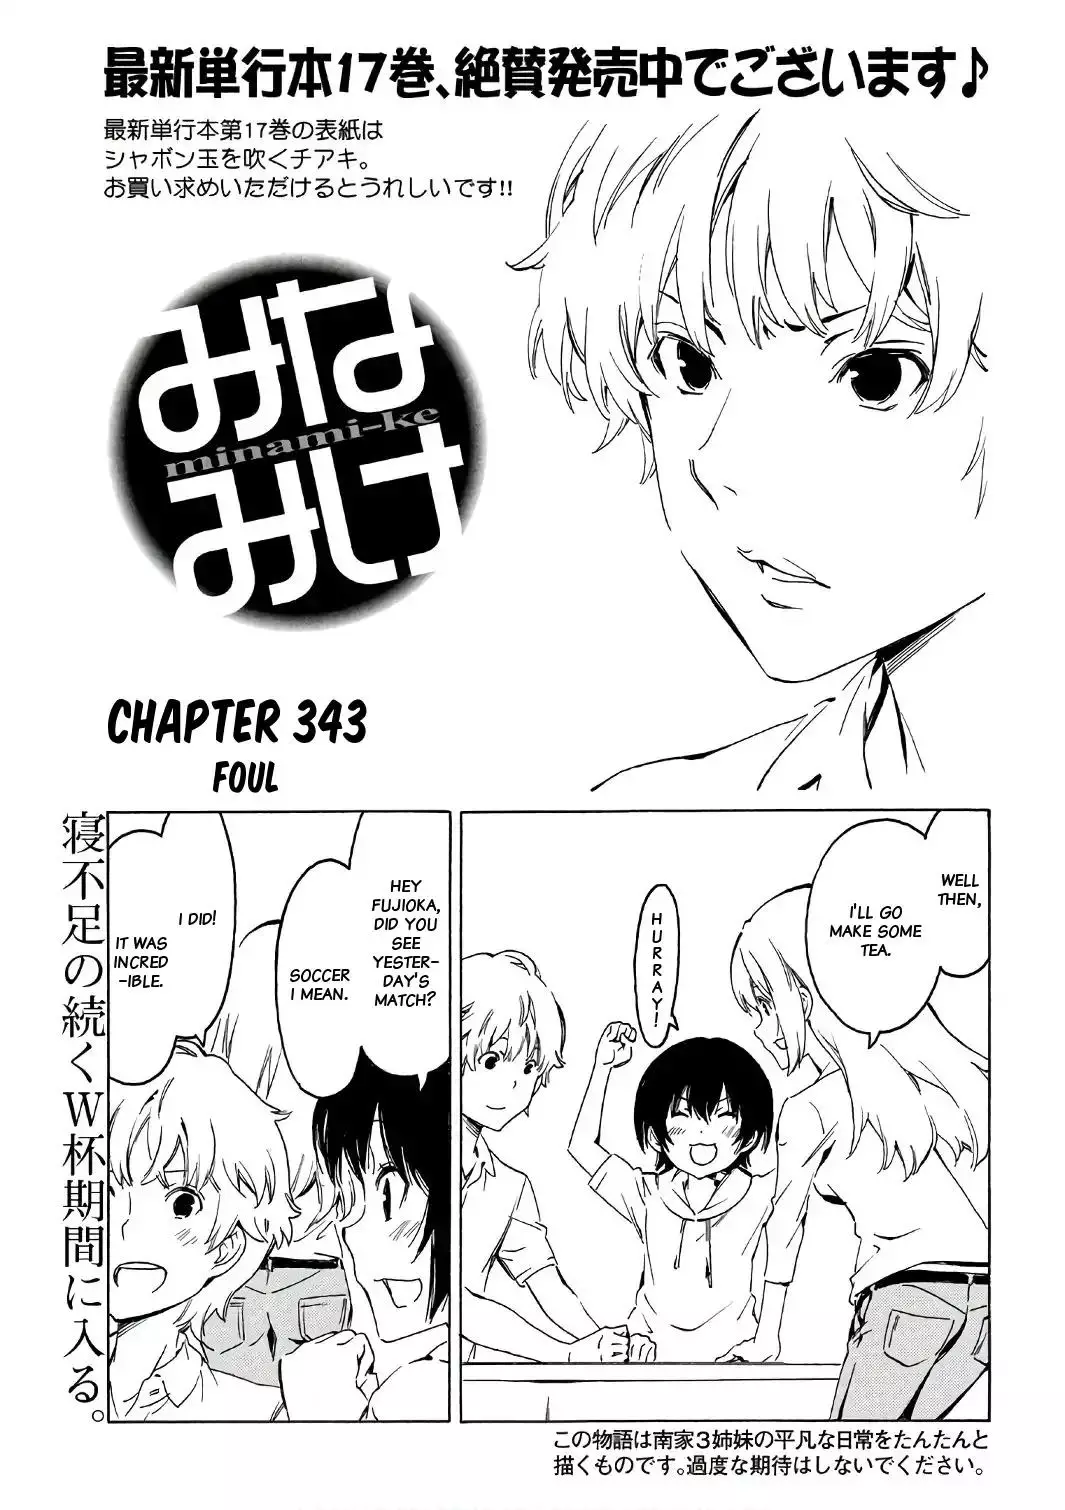 Minami-ke - 343 page 0